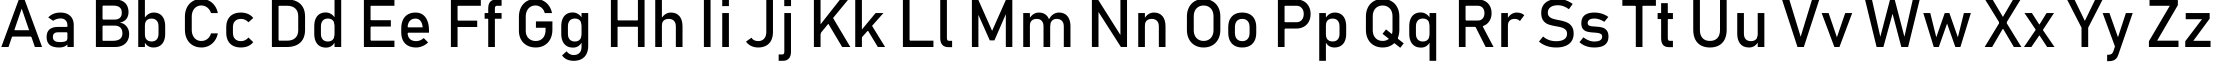 Пример написания английского алфавита шрифтом Bahnschrift